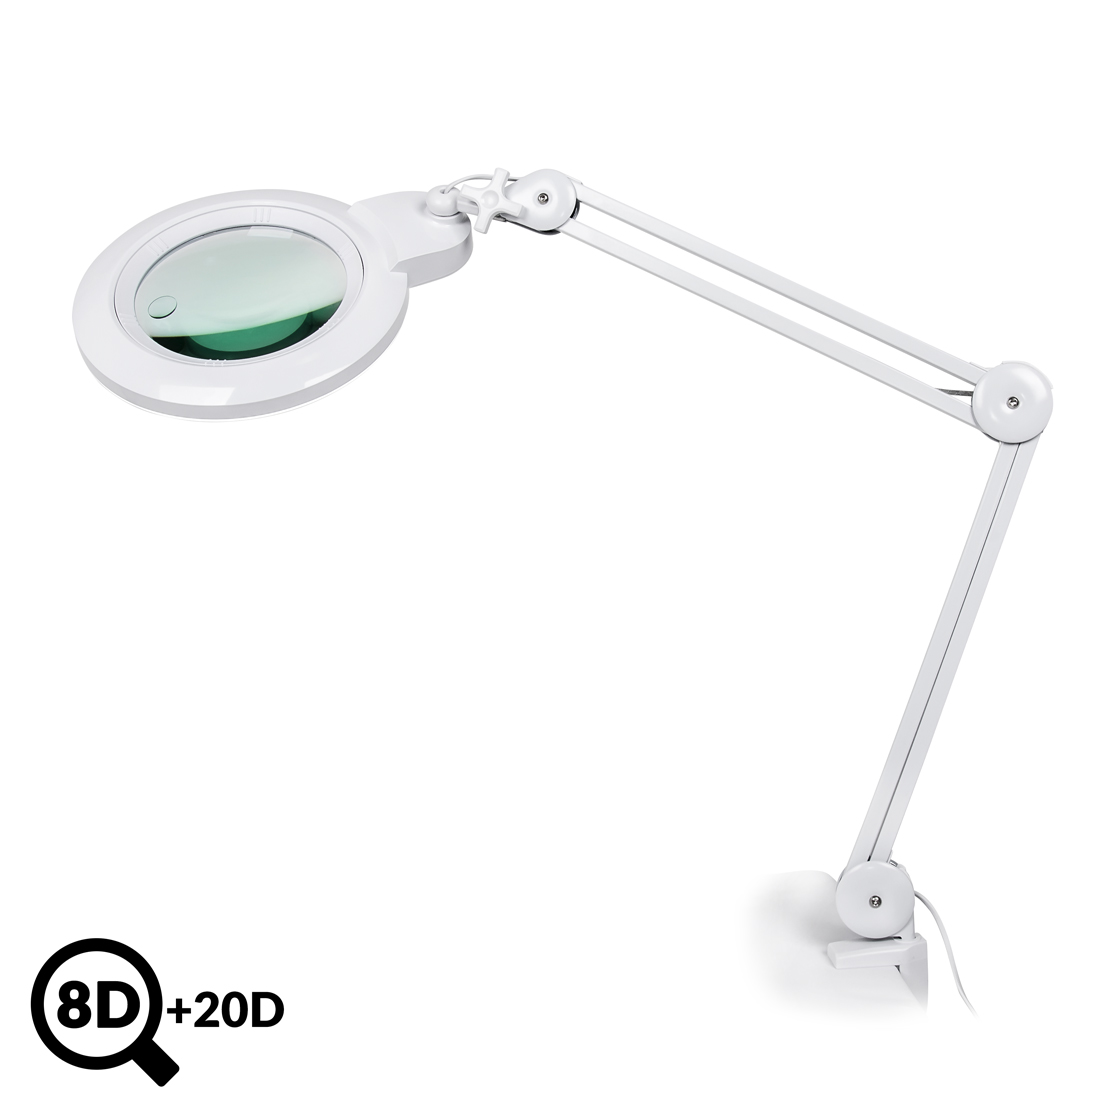 Servisní LED lampa s lupou IB-178, průměr 178mm, 8D + 20D